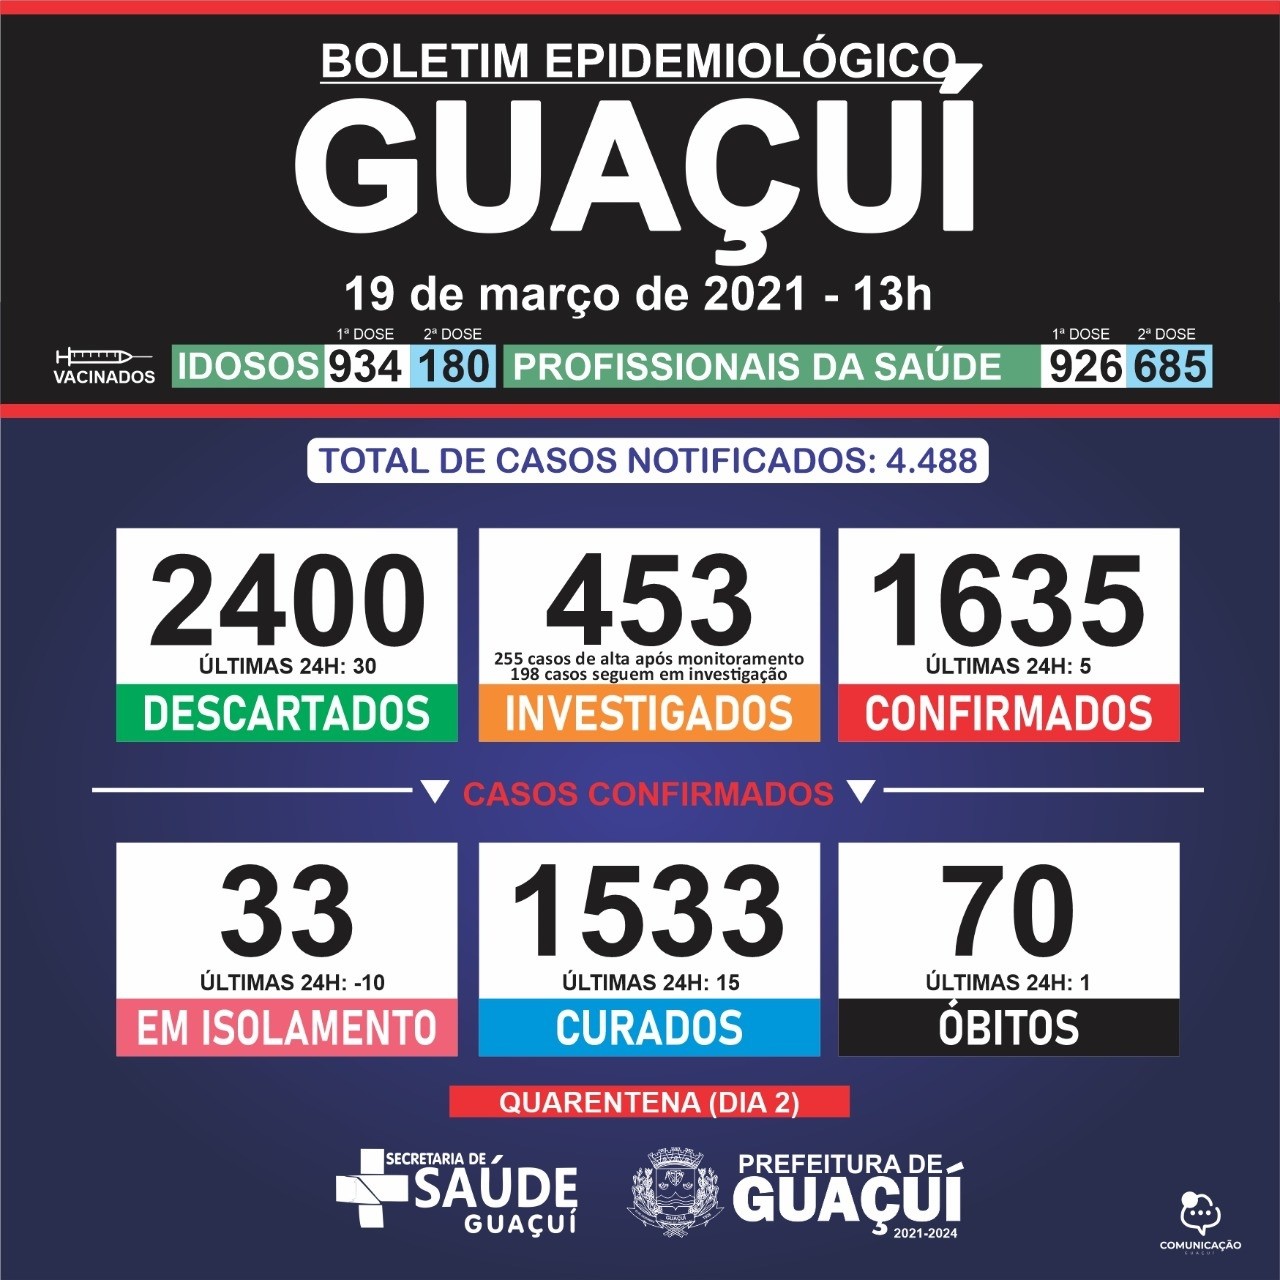 Boletim Epidemiológico 19/03/21: Guaçuí registra 1 óbito, 15 curados e 5 casos confirmados de Covid-19